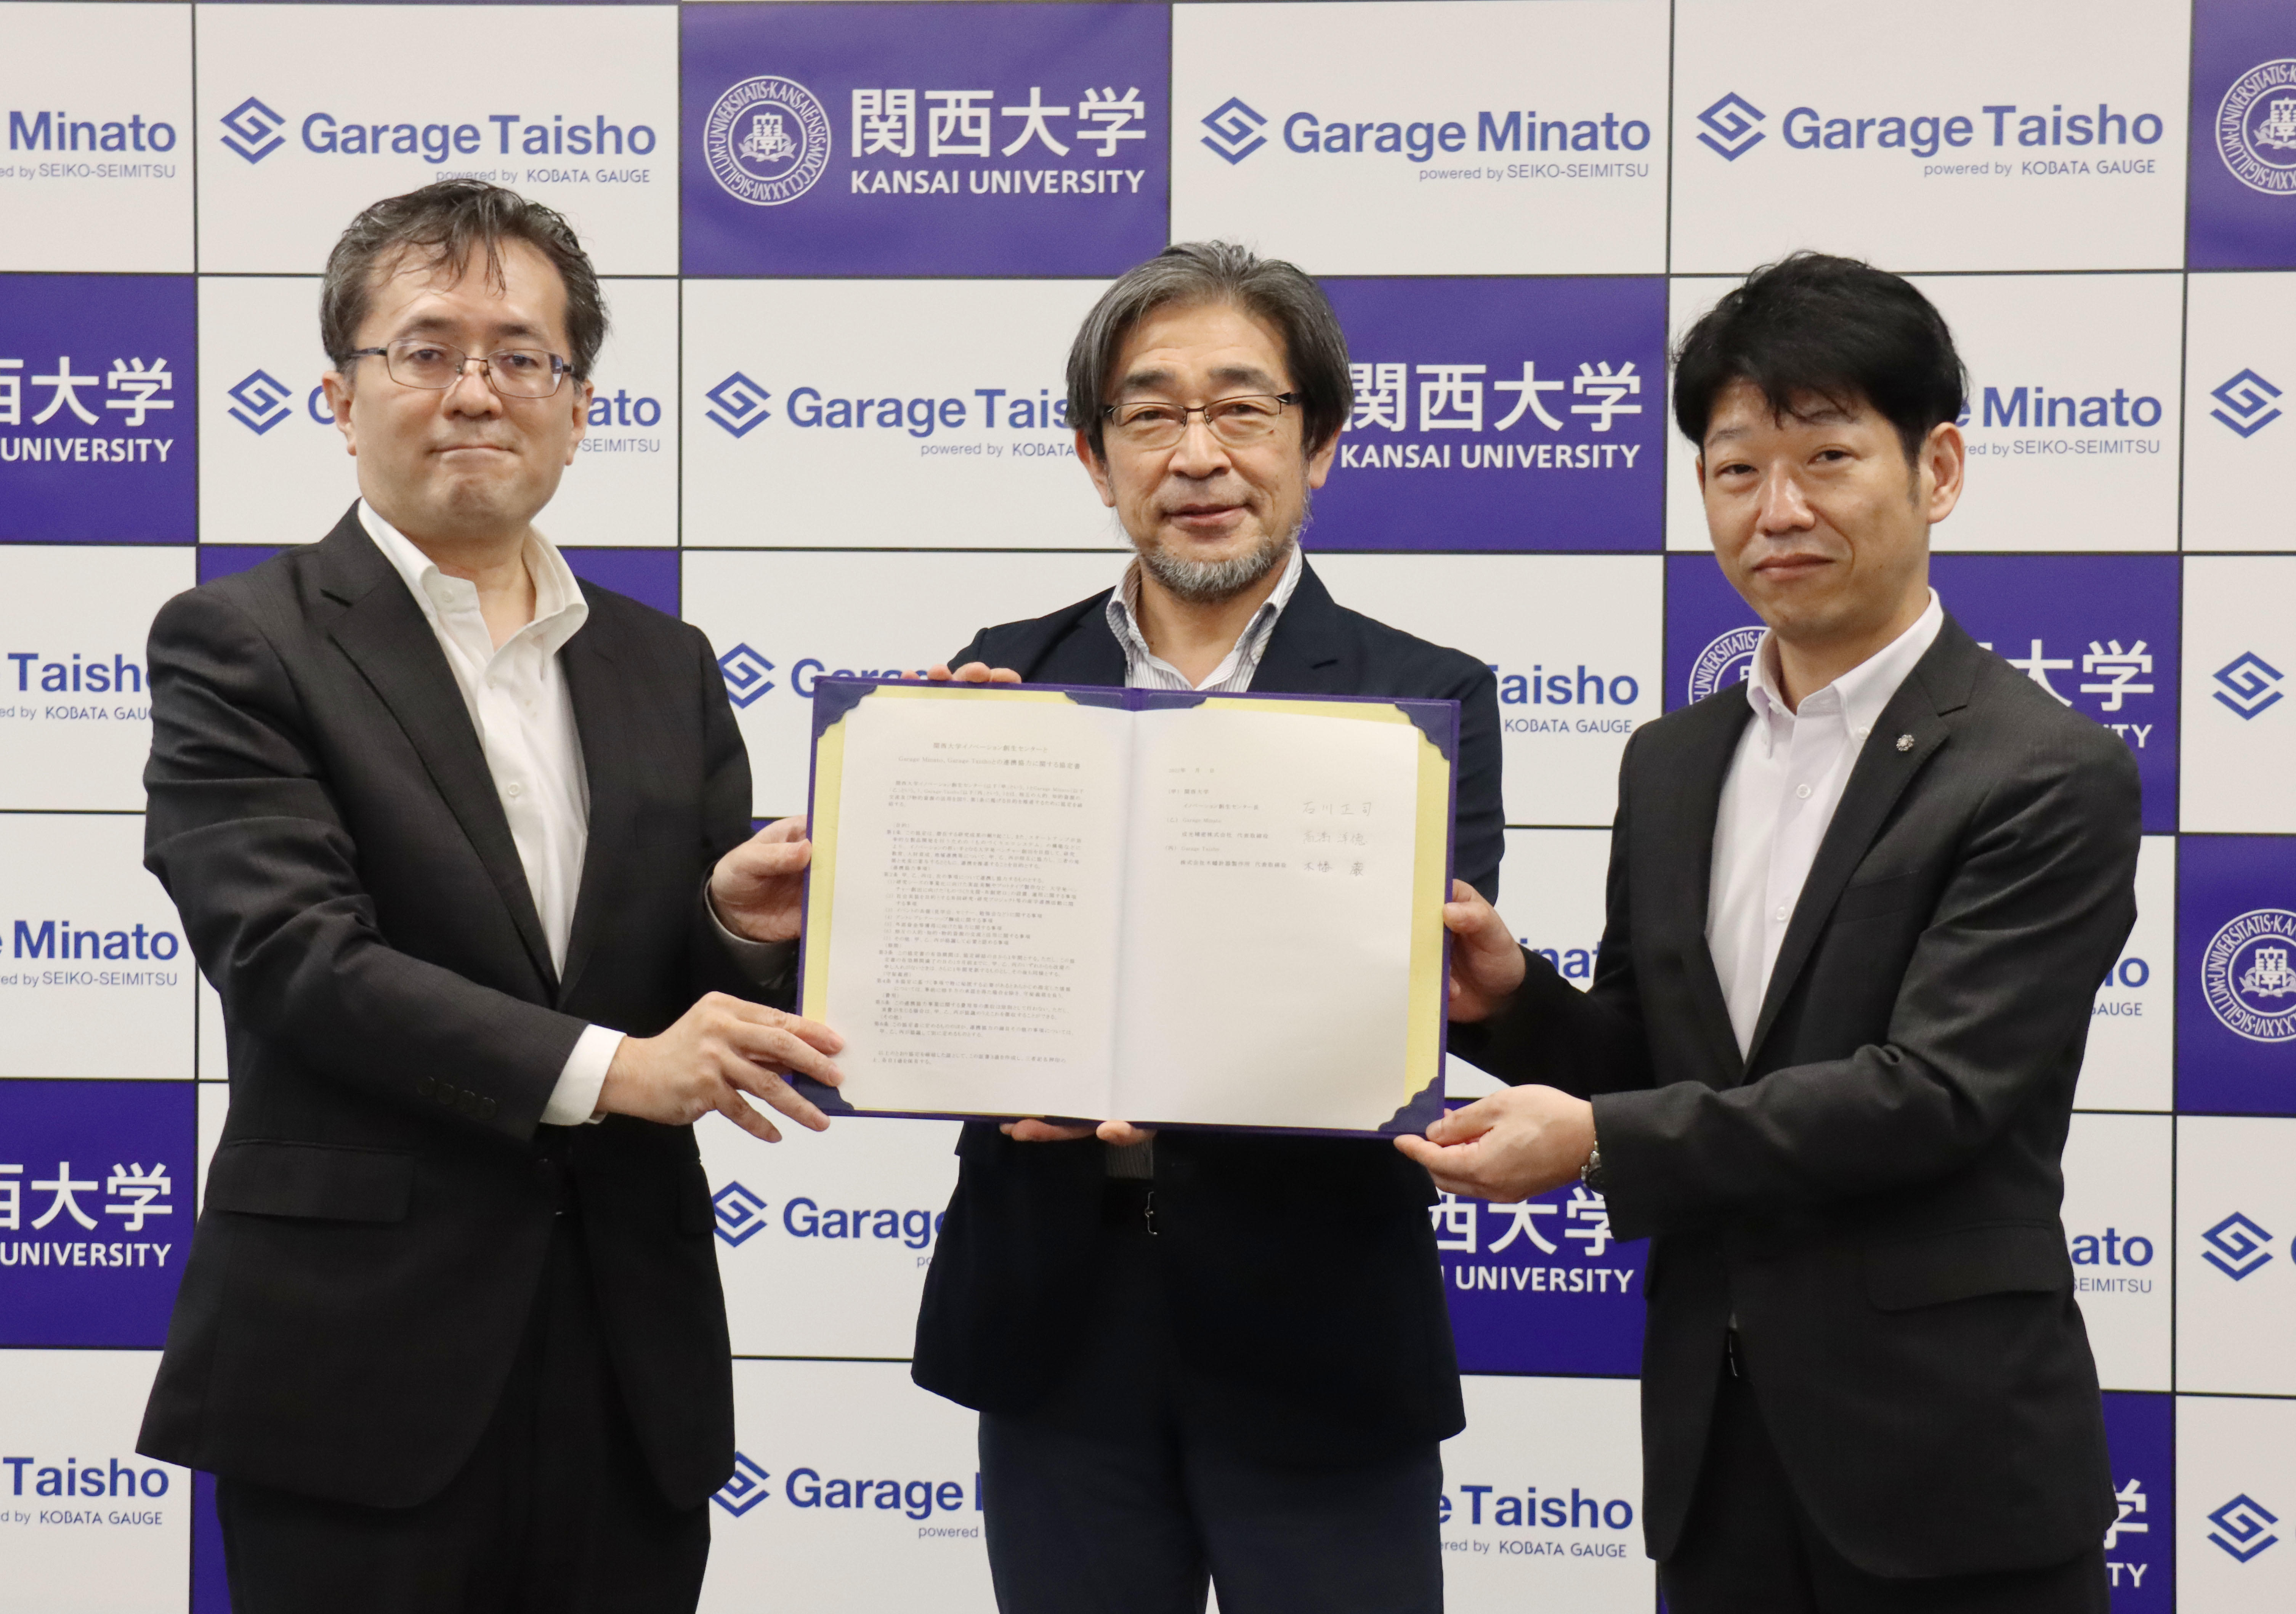 ◆関西大学イノベーション創生センターとGarage Minato、Garage Taishoが三者間連携協定を締結◆ ～ イノベーションの担い手となる大学発ベンチャーの創出を目指して ～